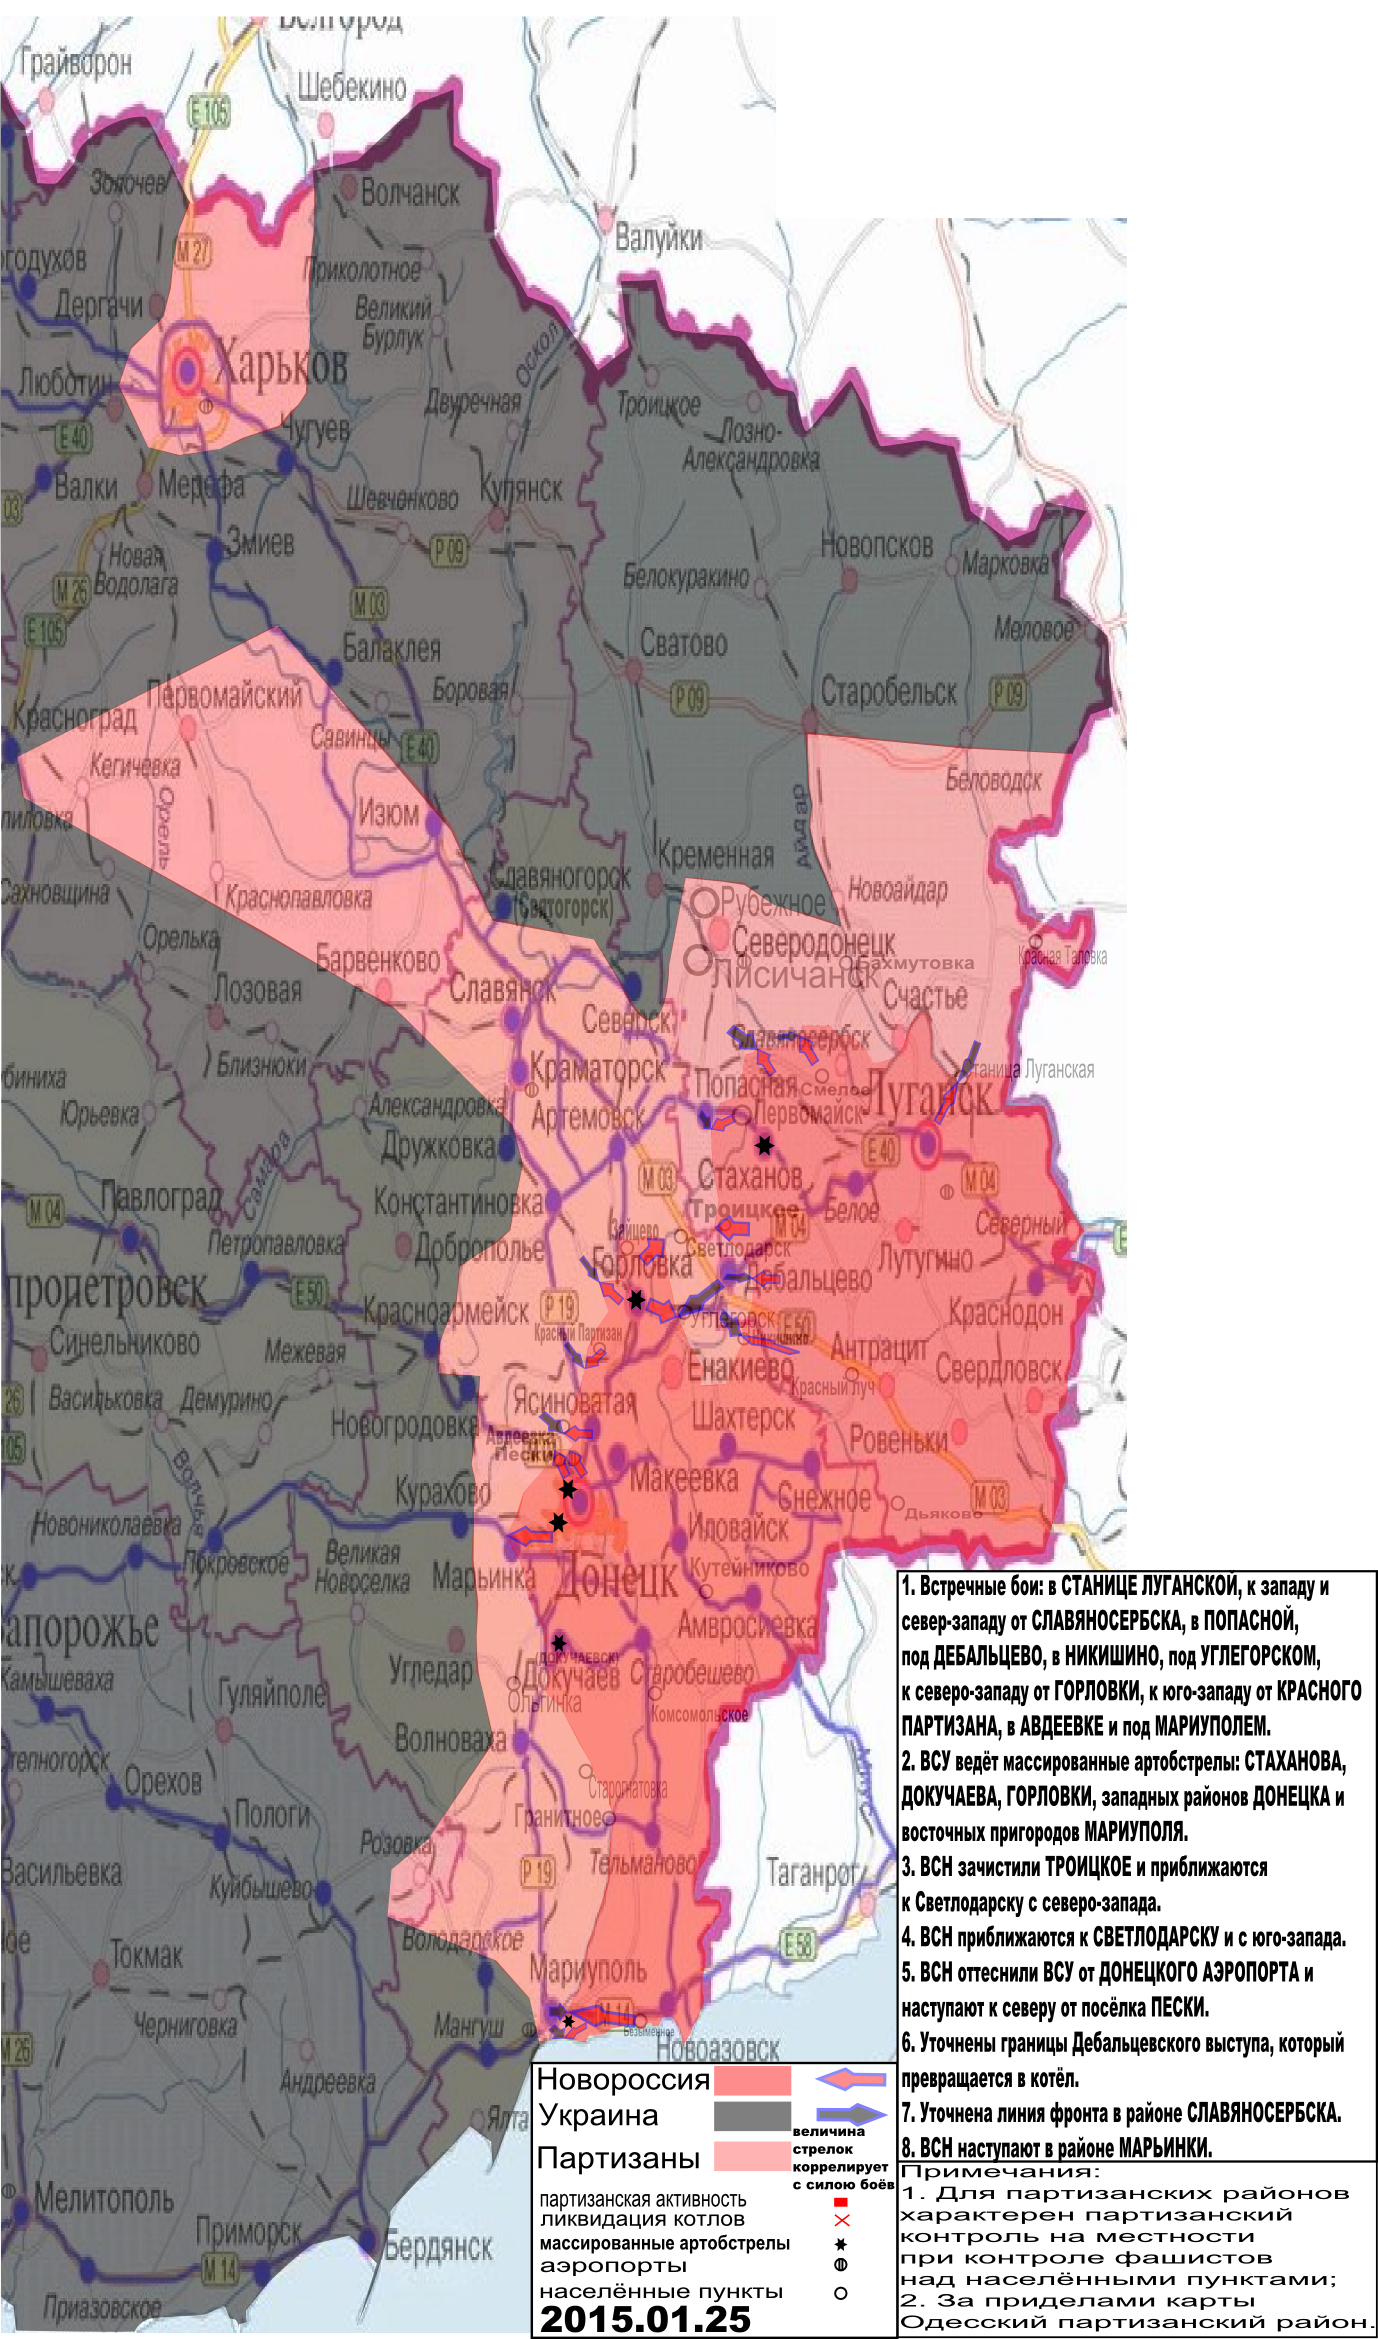 Карта боевых действий и событий в Новороссии с обозначением зон партизанской активности за 25 января